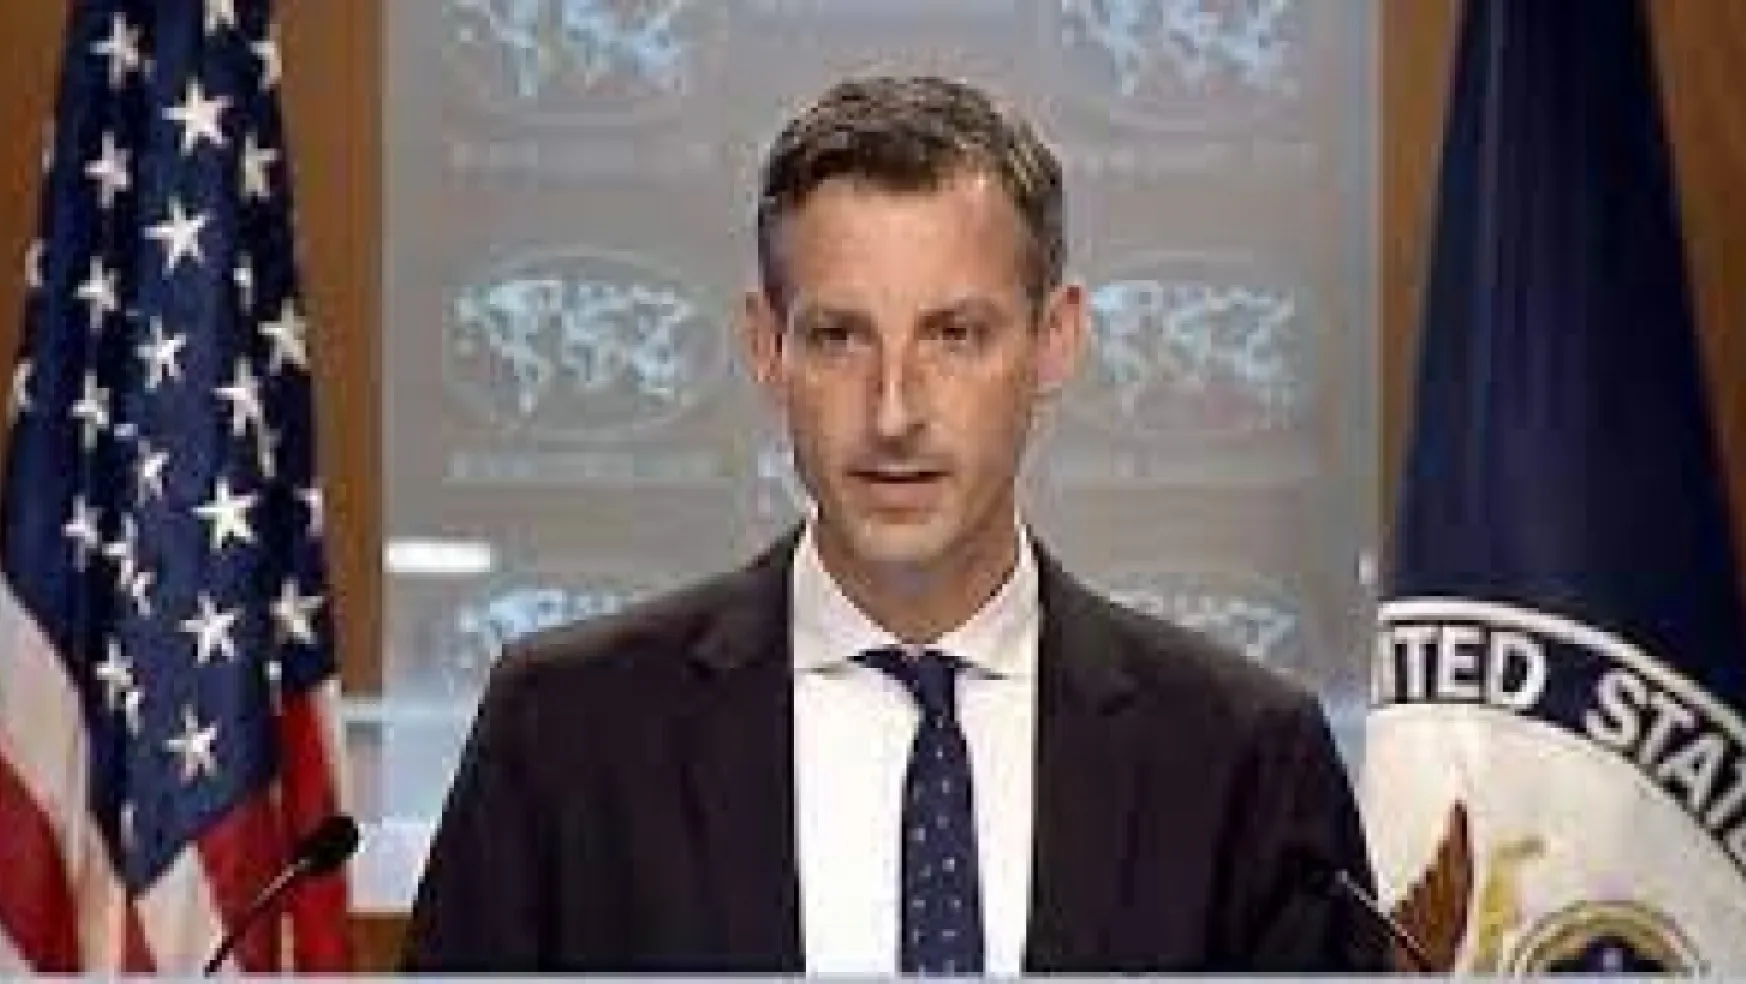 ABD: Suriye'nin kuzey sınırındaki son saldırılardan derin endişe duyuyoruz